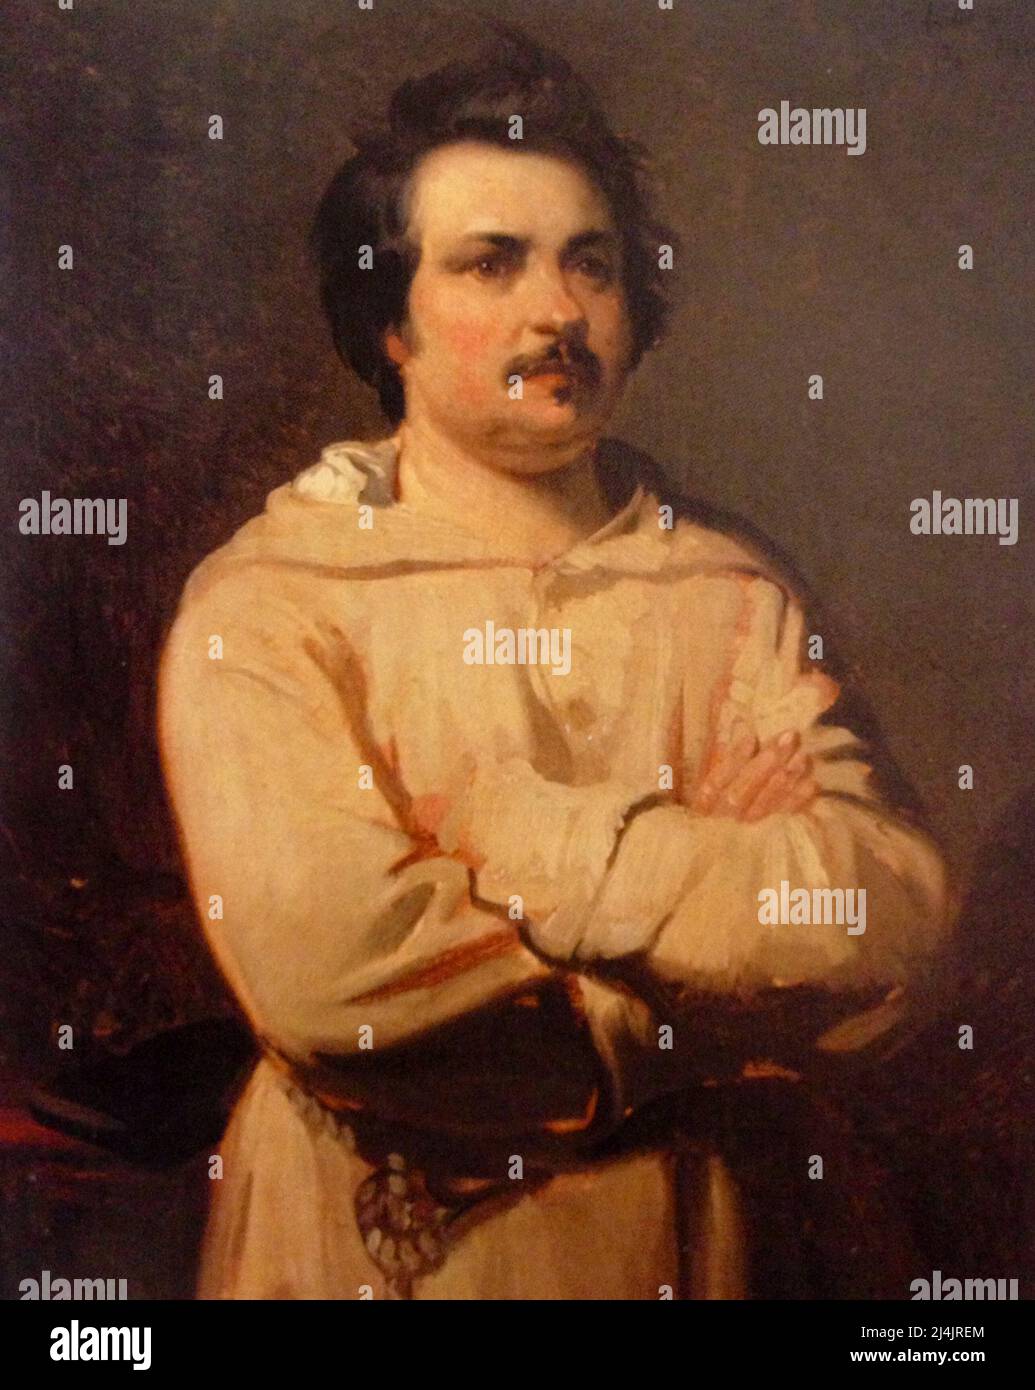 A portrait of the famous french author Honoré de Balzac Stock Photo